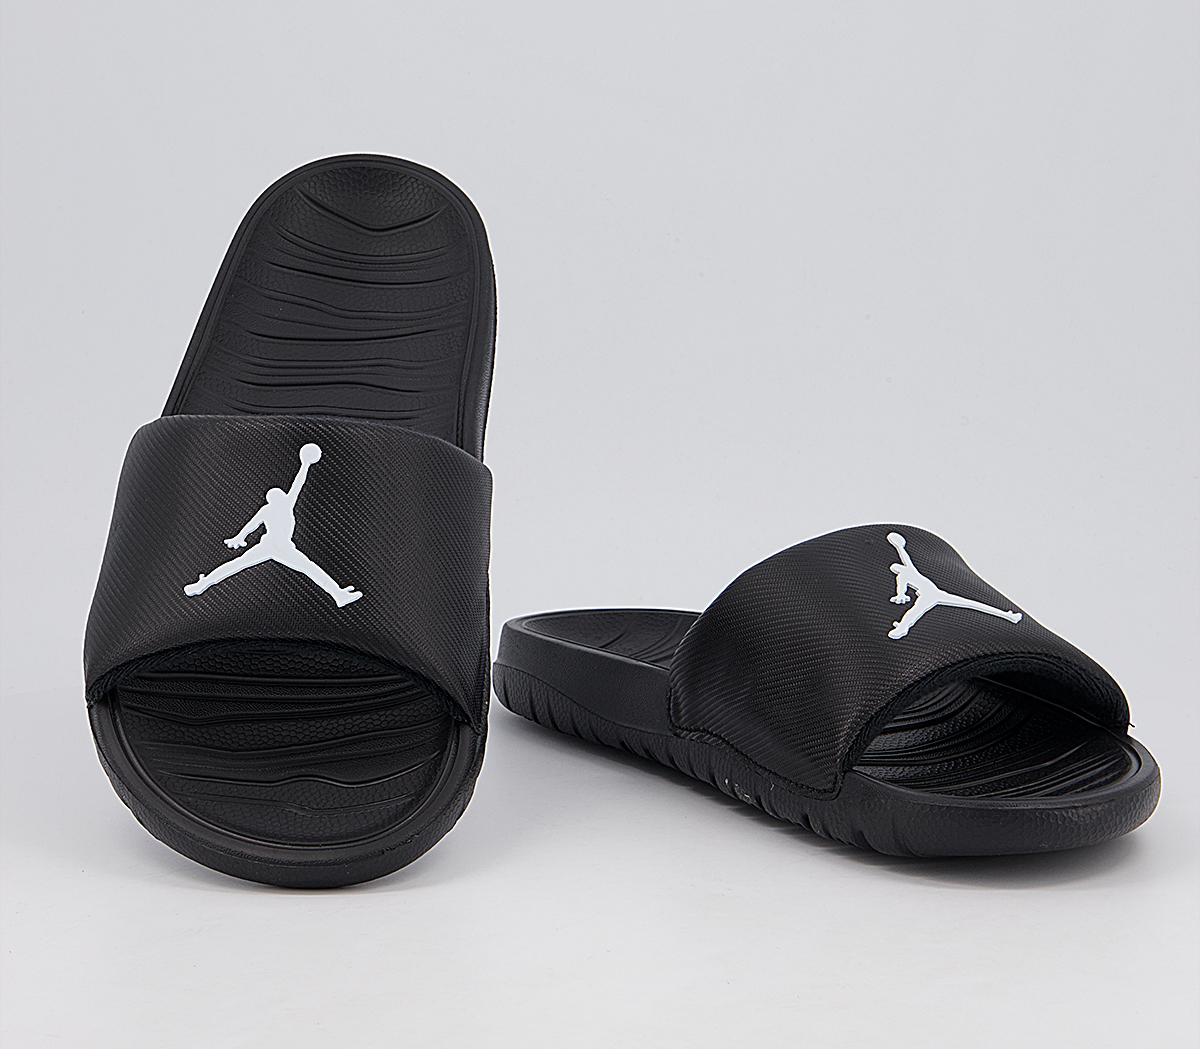 Jordan Jordan Break Slides Black White - Men’s Sandals